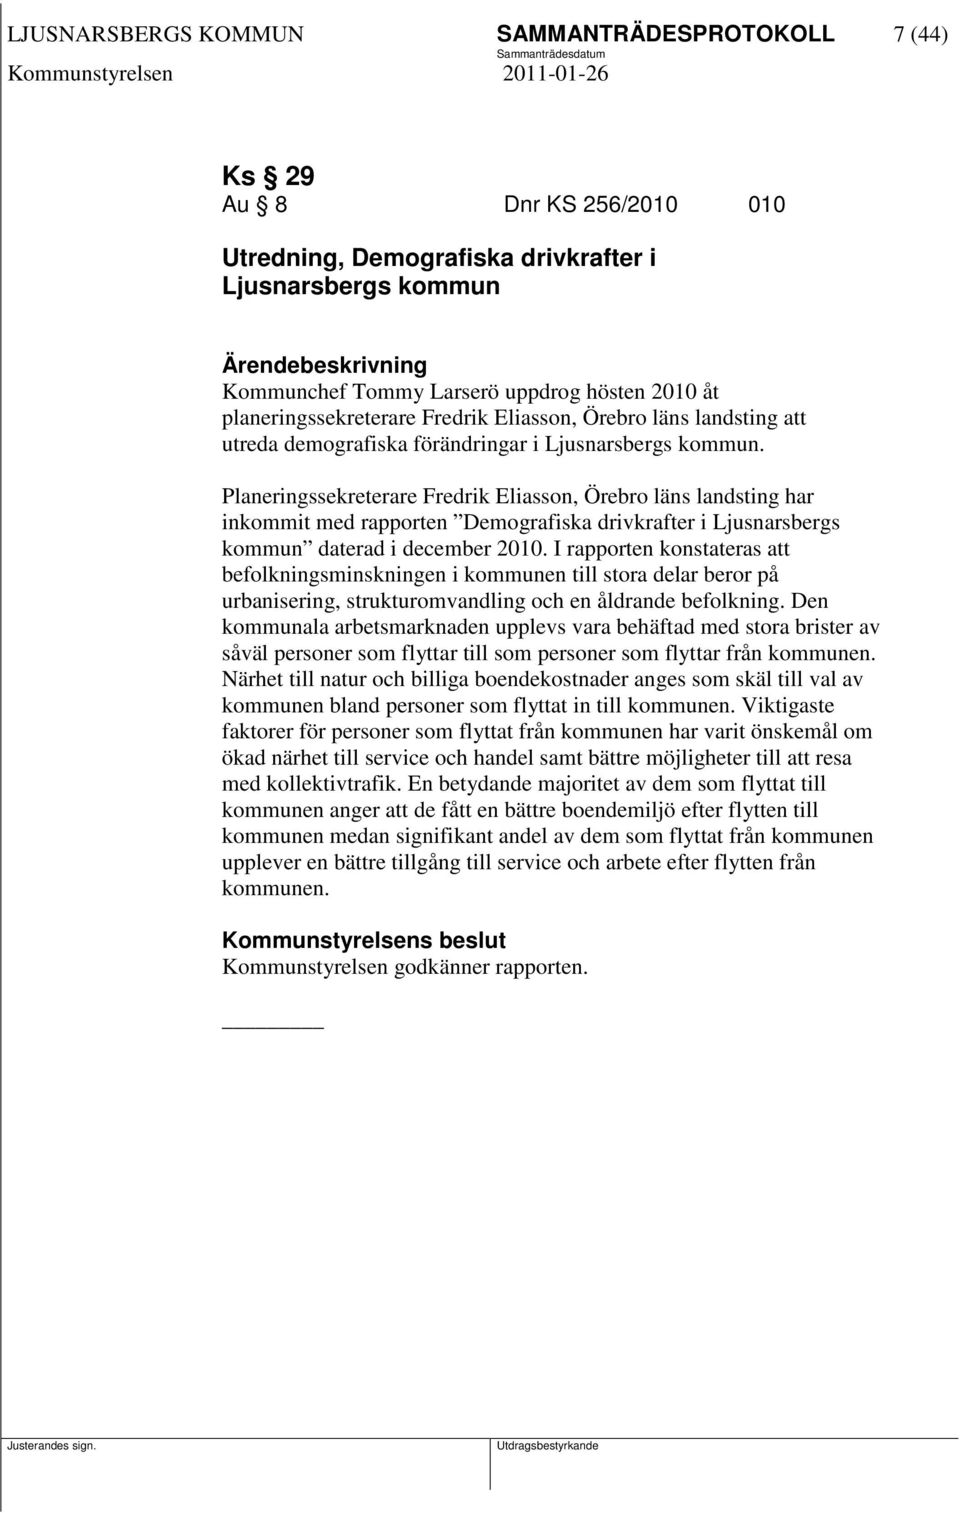 Planeringssekreterare Fredrik Eliasson, Örebro läns landsting har inkommit med rapporten Demografiska drivkrafter i Ljusnarsbergs kommun daterad i december 2010.